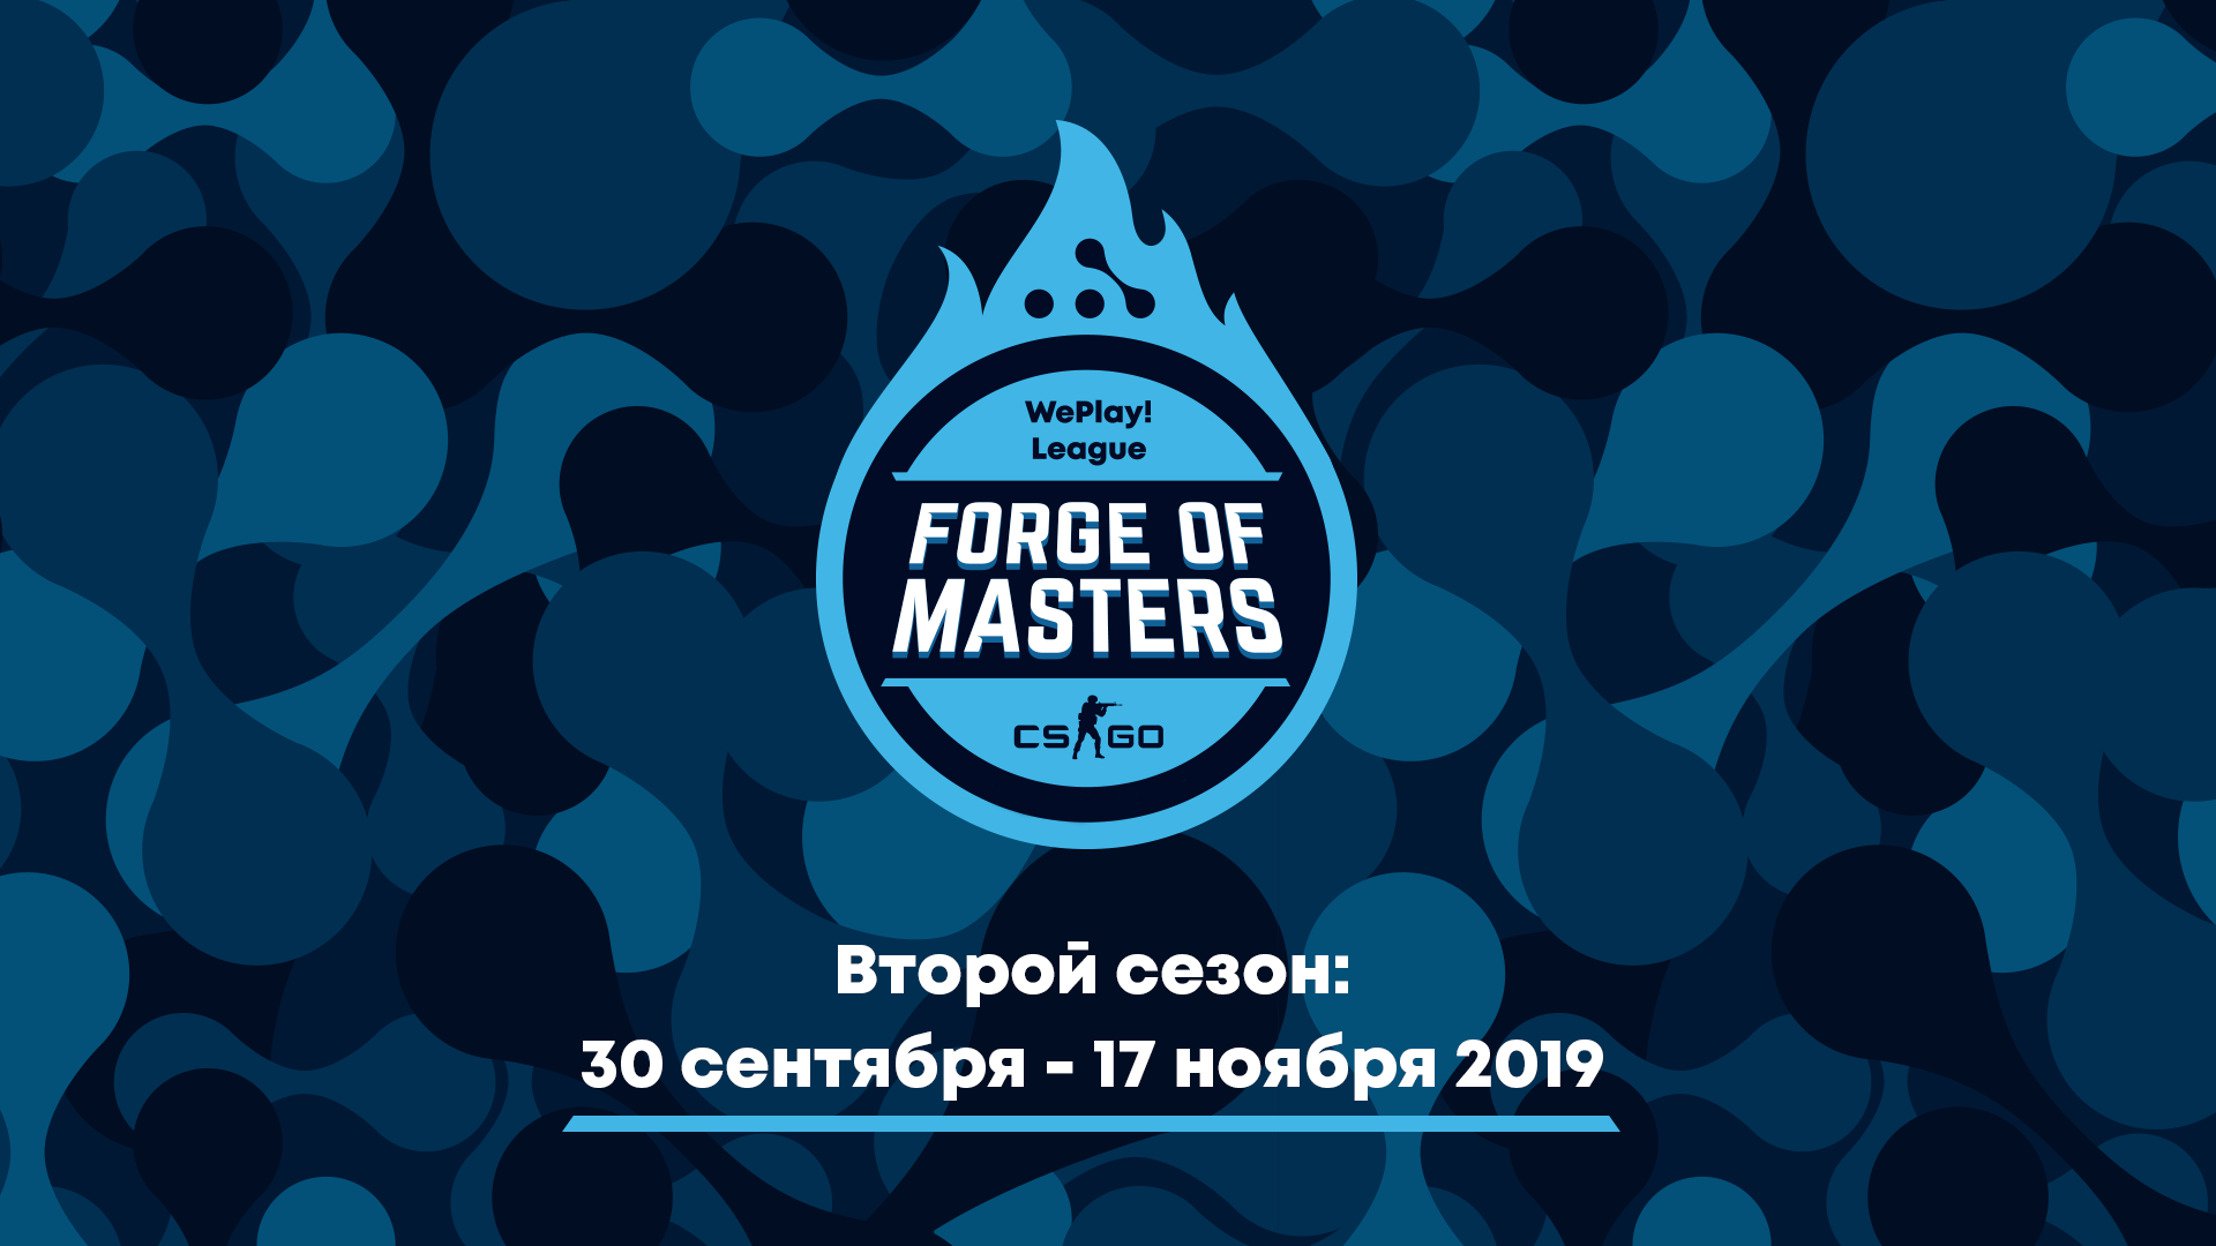 Стали известны даты второго сезона лиги Forge of Masters. WePlay! League